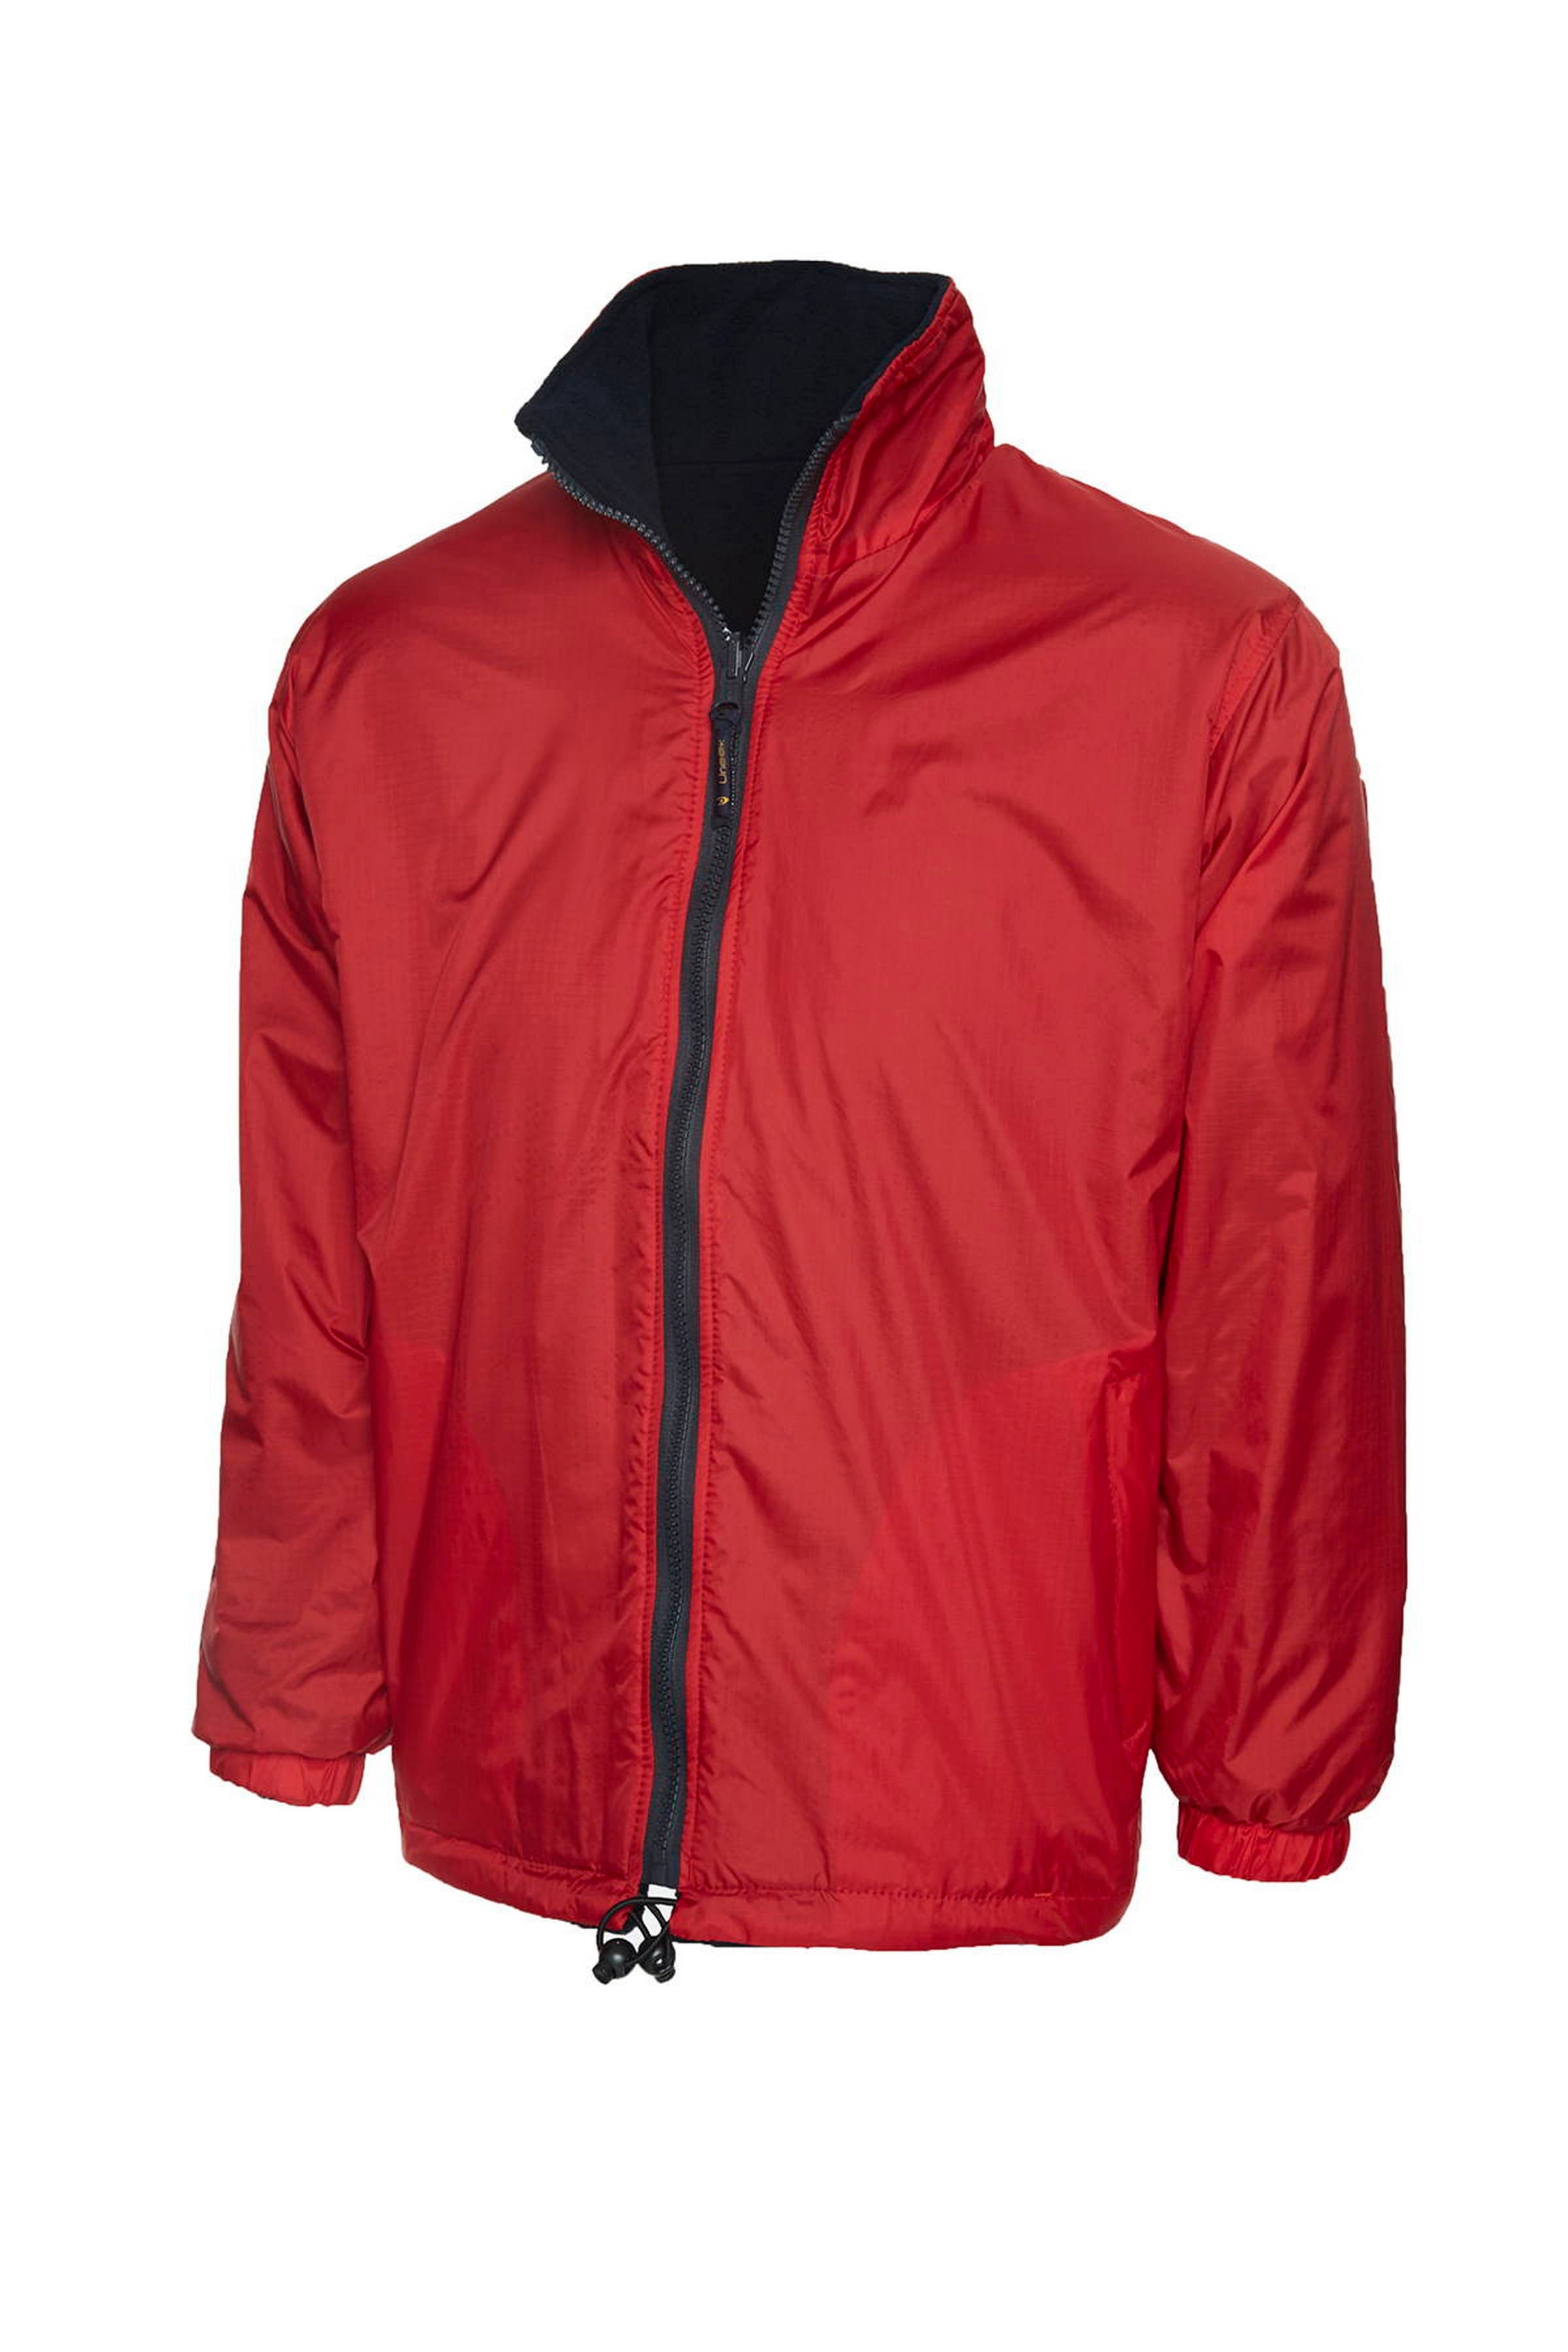 Uneek Premium Reversible Fleece Jacket UC605 - Red